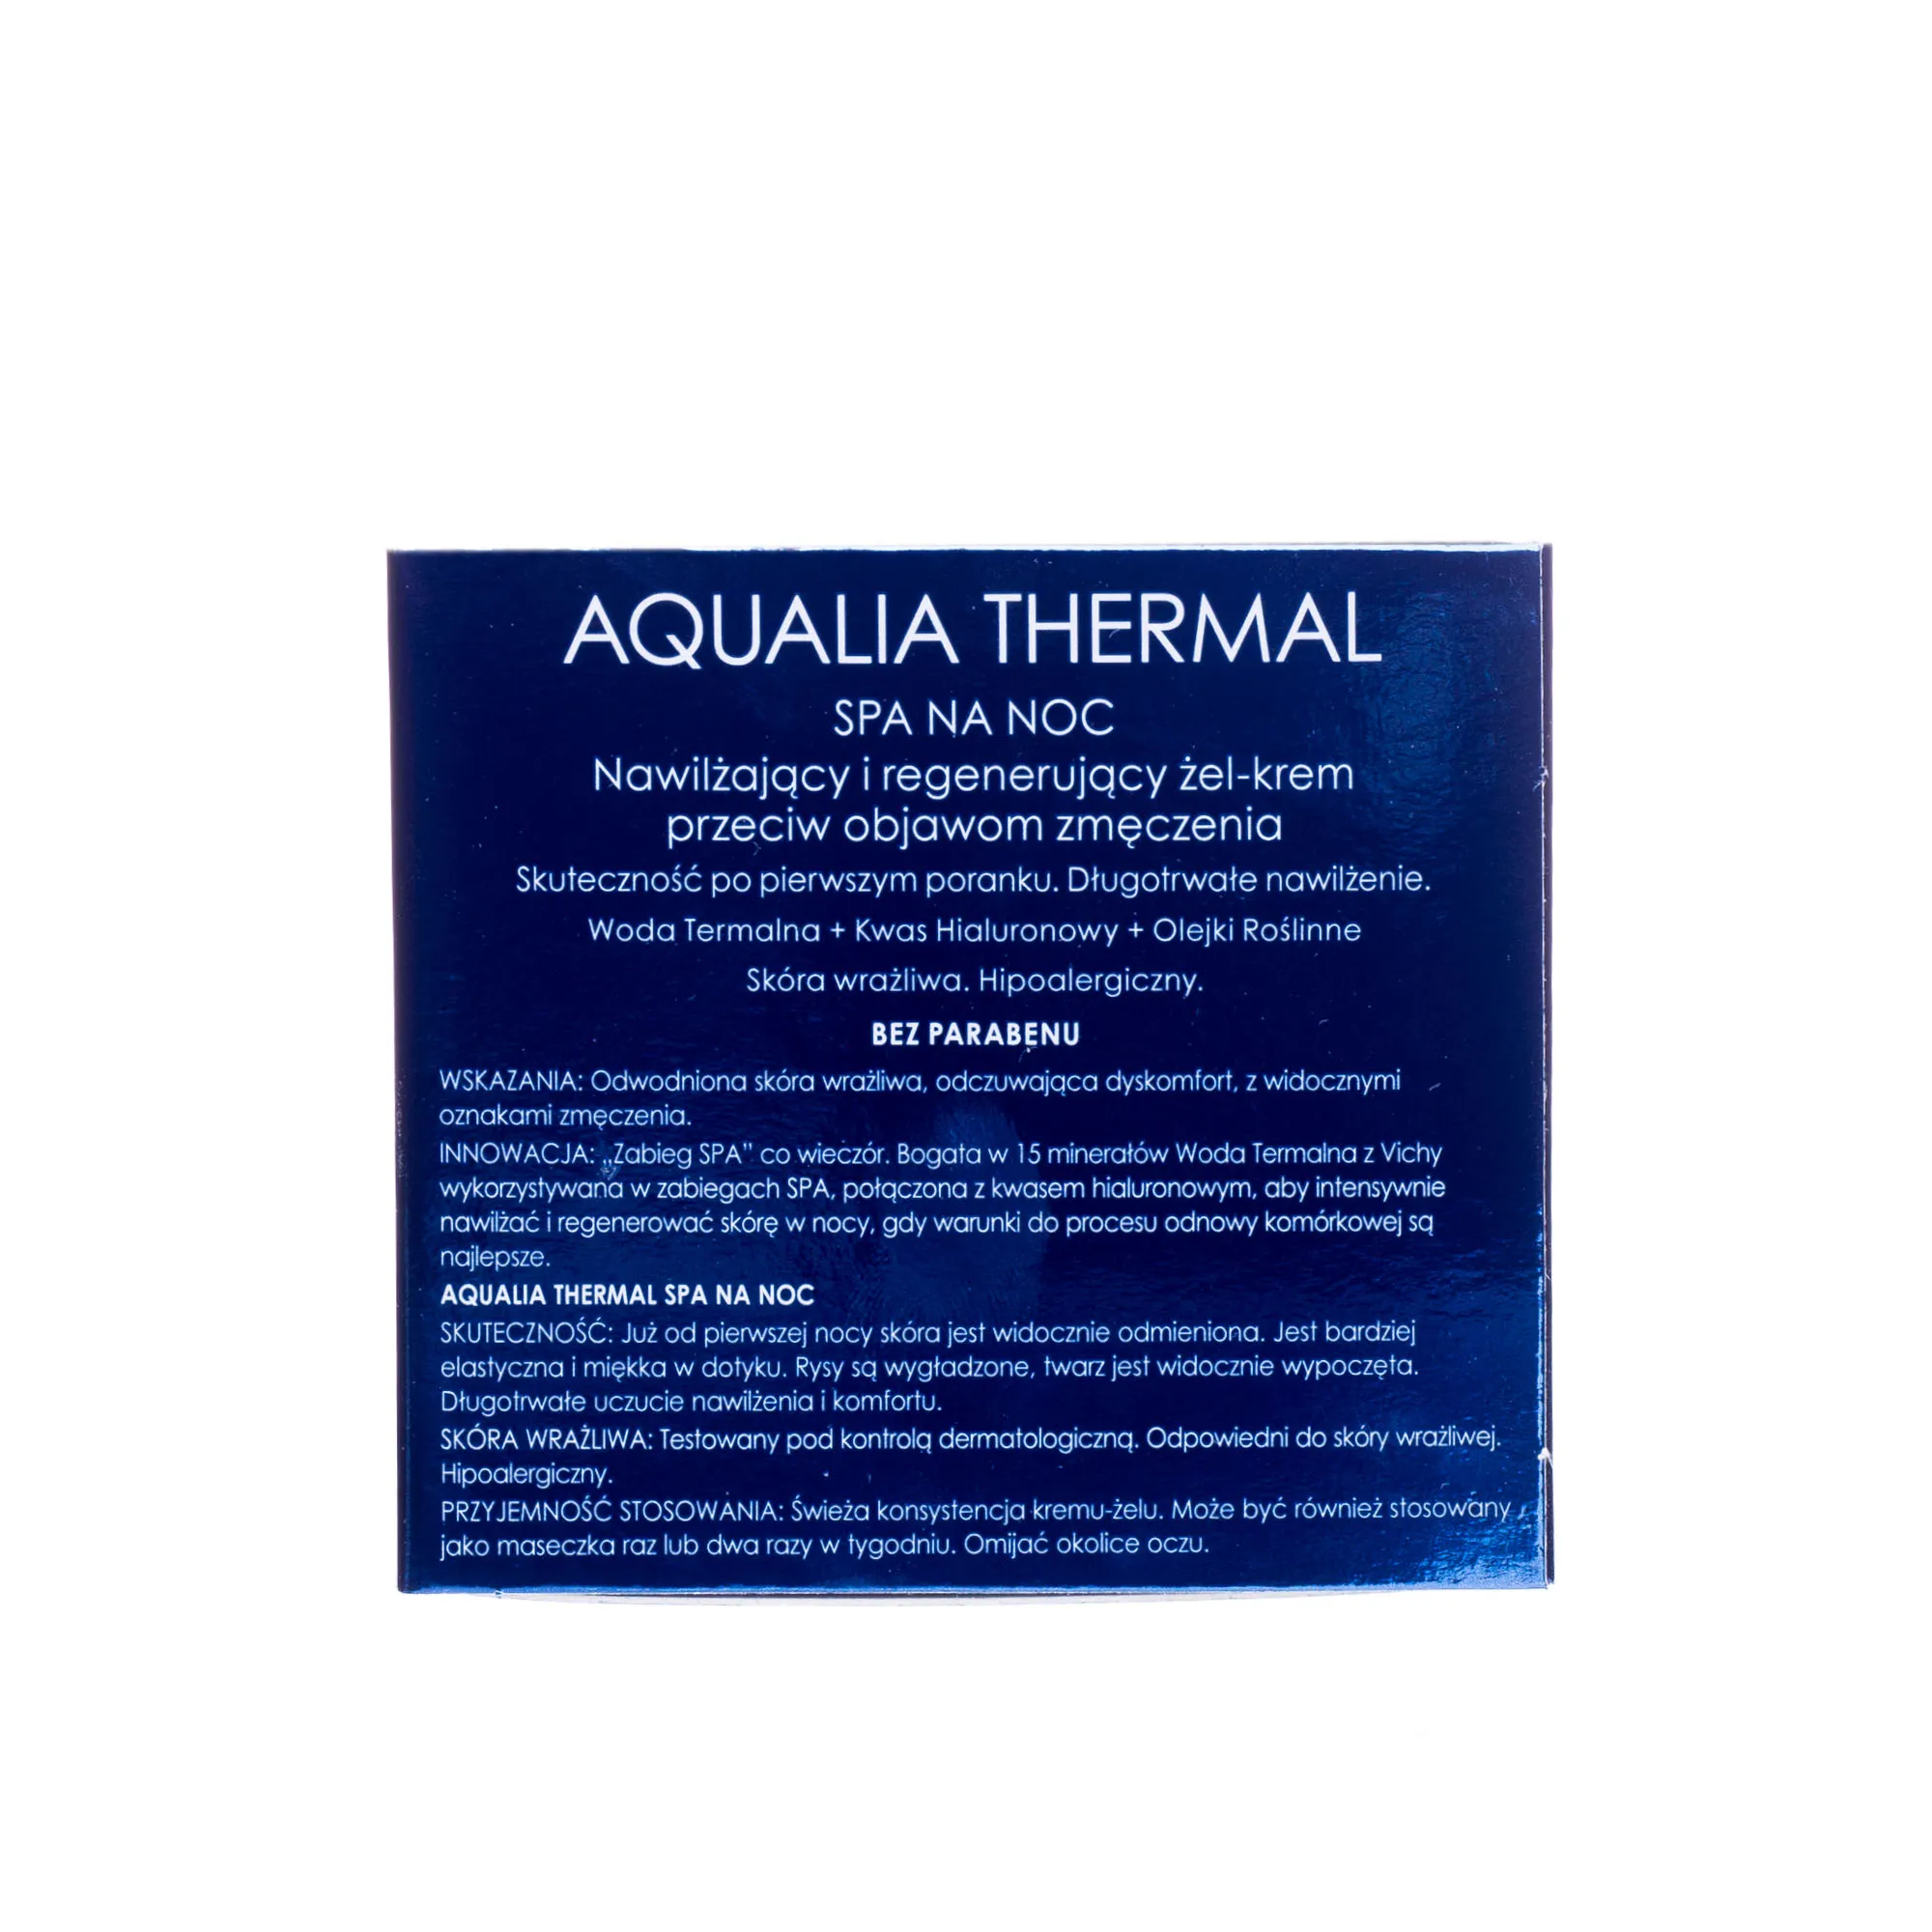 Vichy Aqualia Thermal, spa na noc, nawilżający i regenerujący żel-krem przeciw objawom zmęczenia, 75 ml 